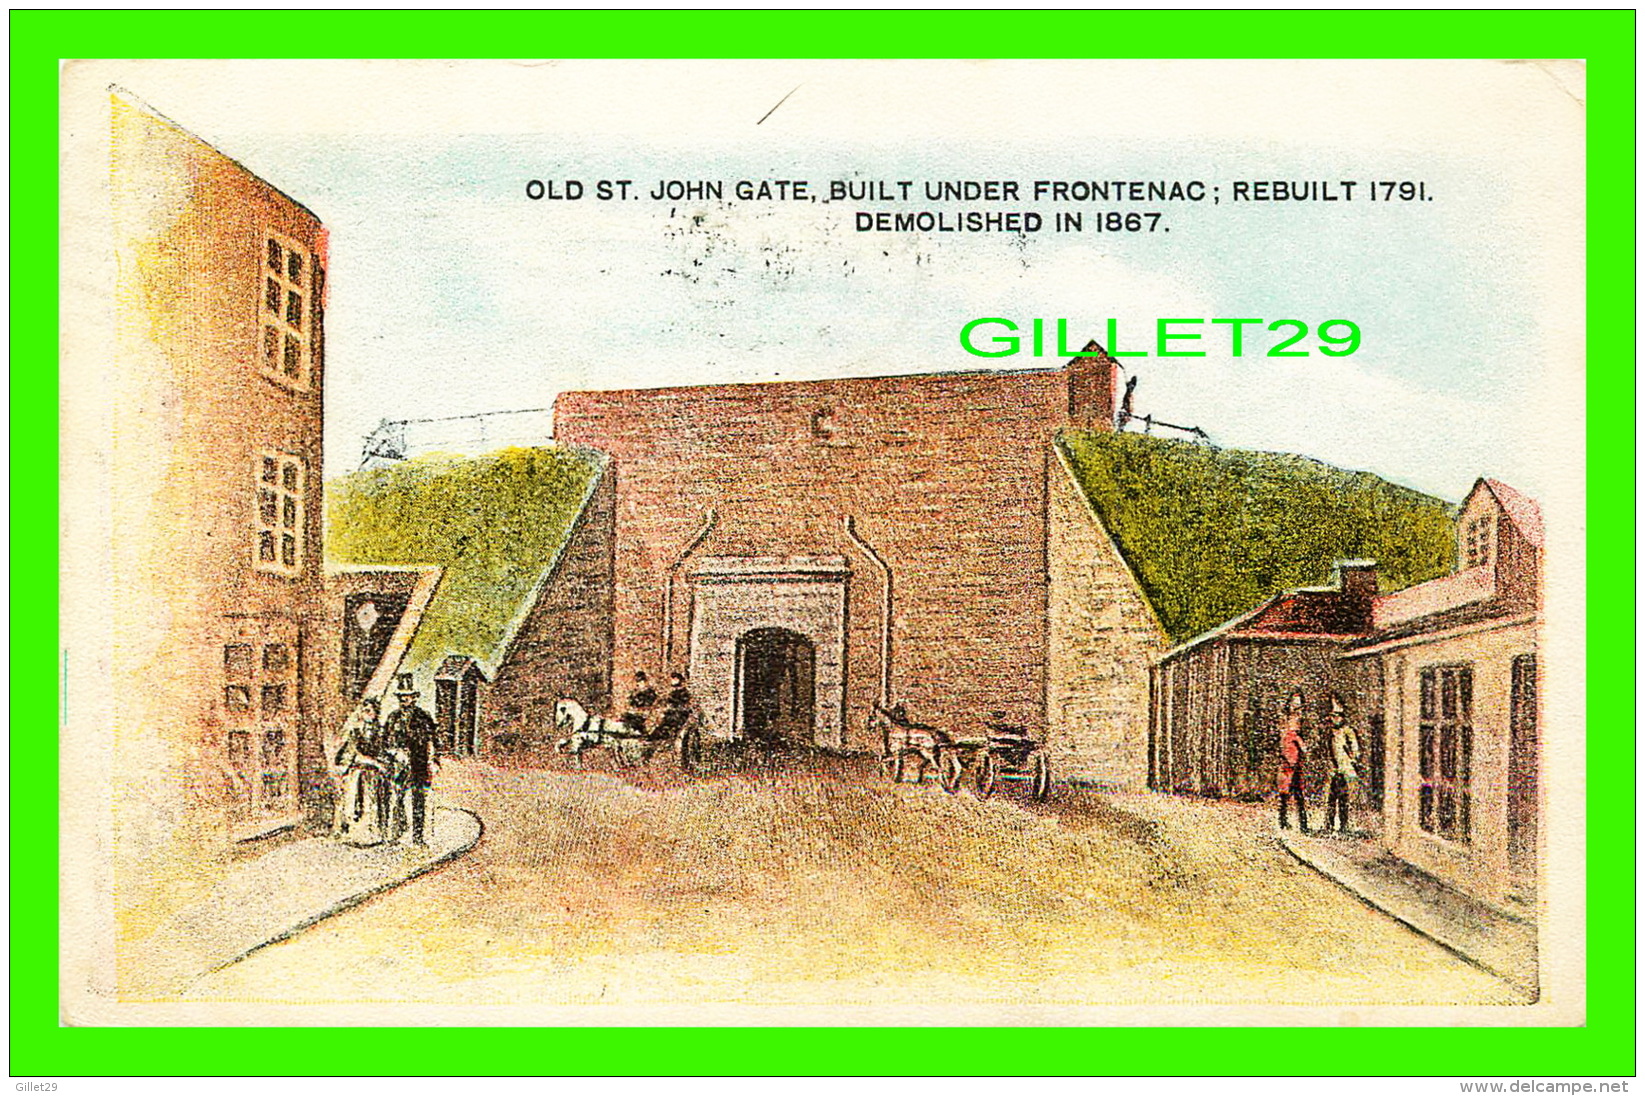 QUÉBEC - OLD ST JOHN GATE, BUILT UNDER FRONTENAC, REBUILT 1791, DEMOLISHED IN 1867 - TRAVEL IN 1908  - MORTIMER CO - - Québec – Les Portes